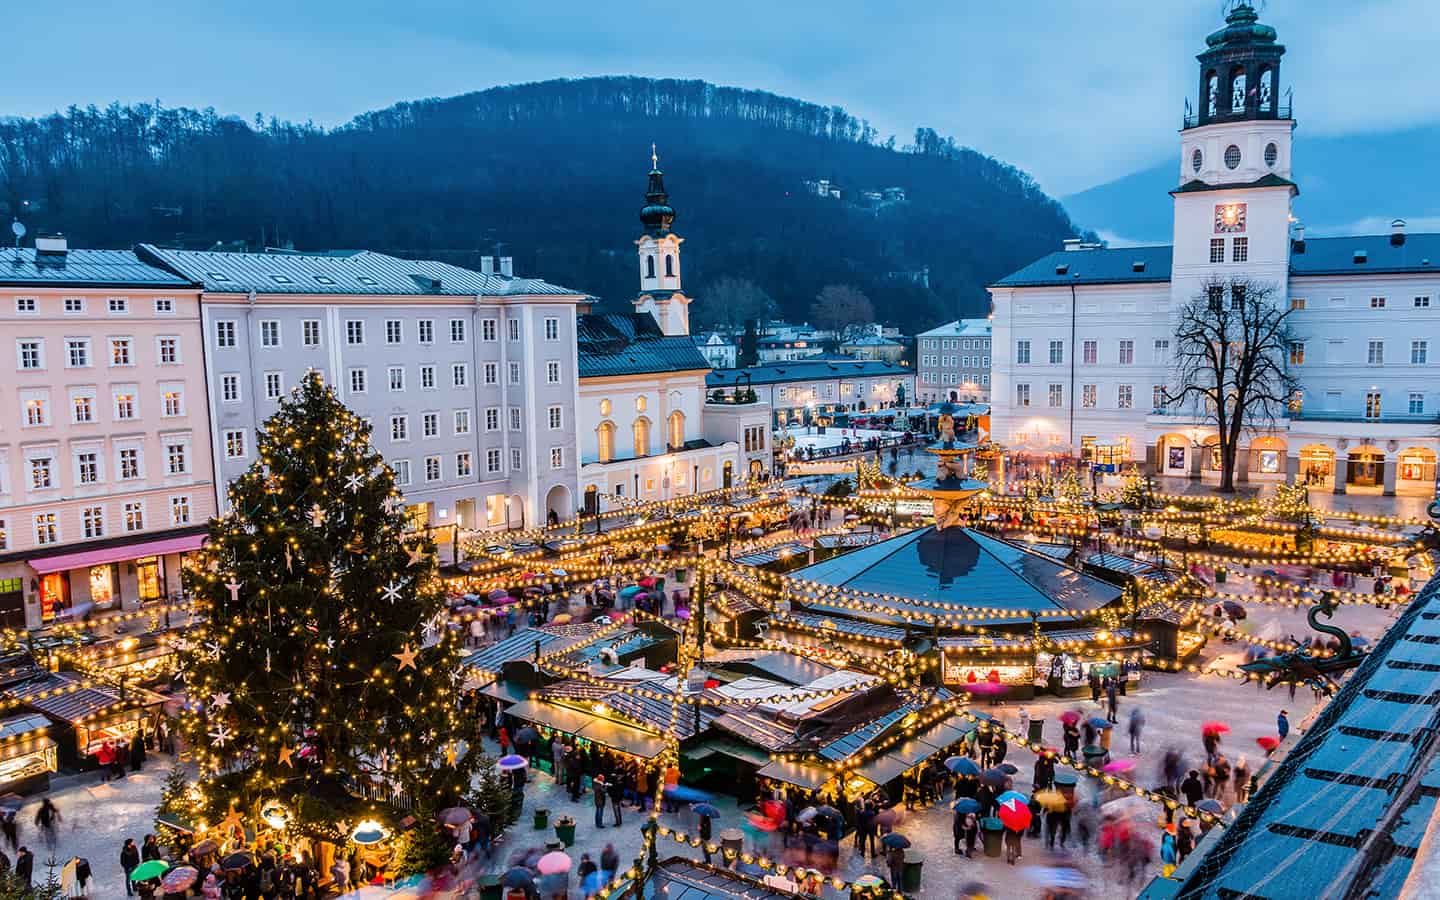 Weihnachtsmarkt in der Altstadt von Salzburg, Österreich